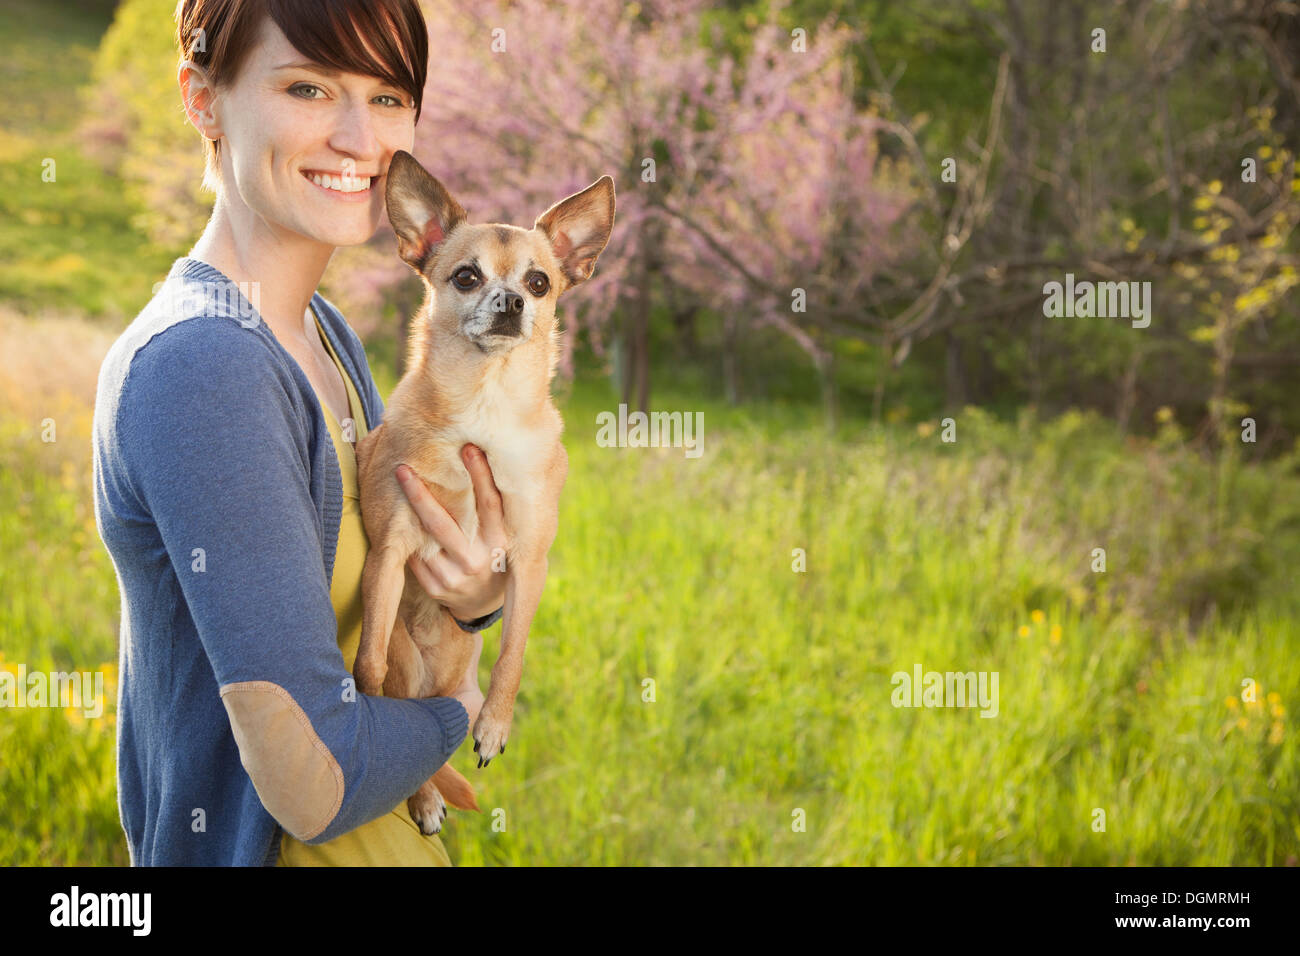 Eine junge Frau auf einer Wiese im Frühjahr. Einen kleinen Chihuahua Hund hält in ihren Armen. Ein Haustier. Stockfoto